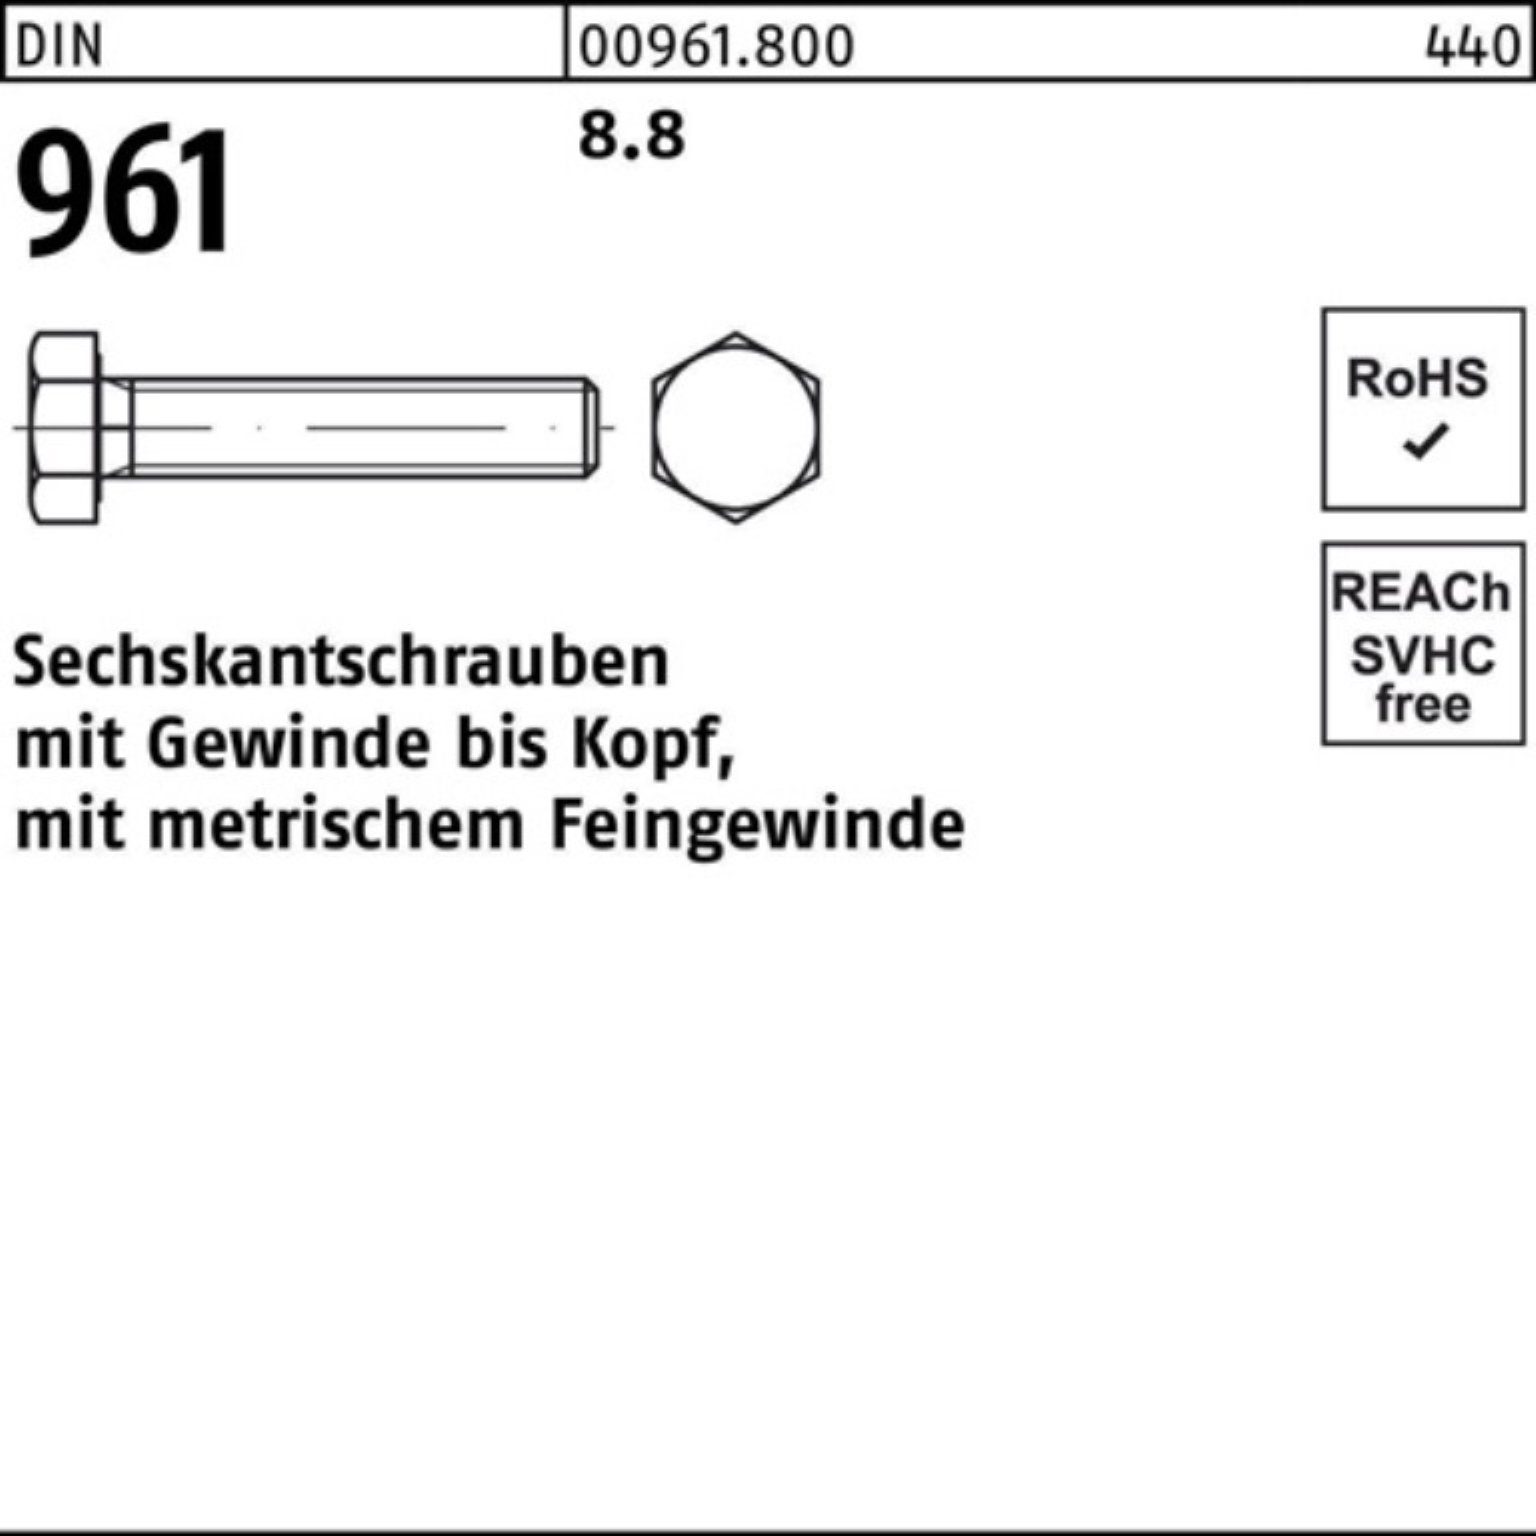 Reyher Sechskantschraube 100er Pack DIN VG 25 80 961 DIN 8.8 Stück M16x1,5x Sechskantschraube